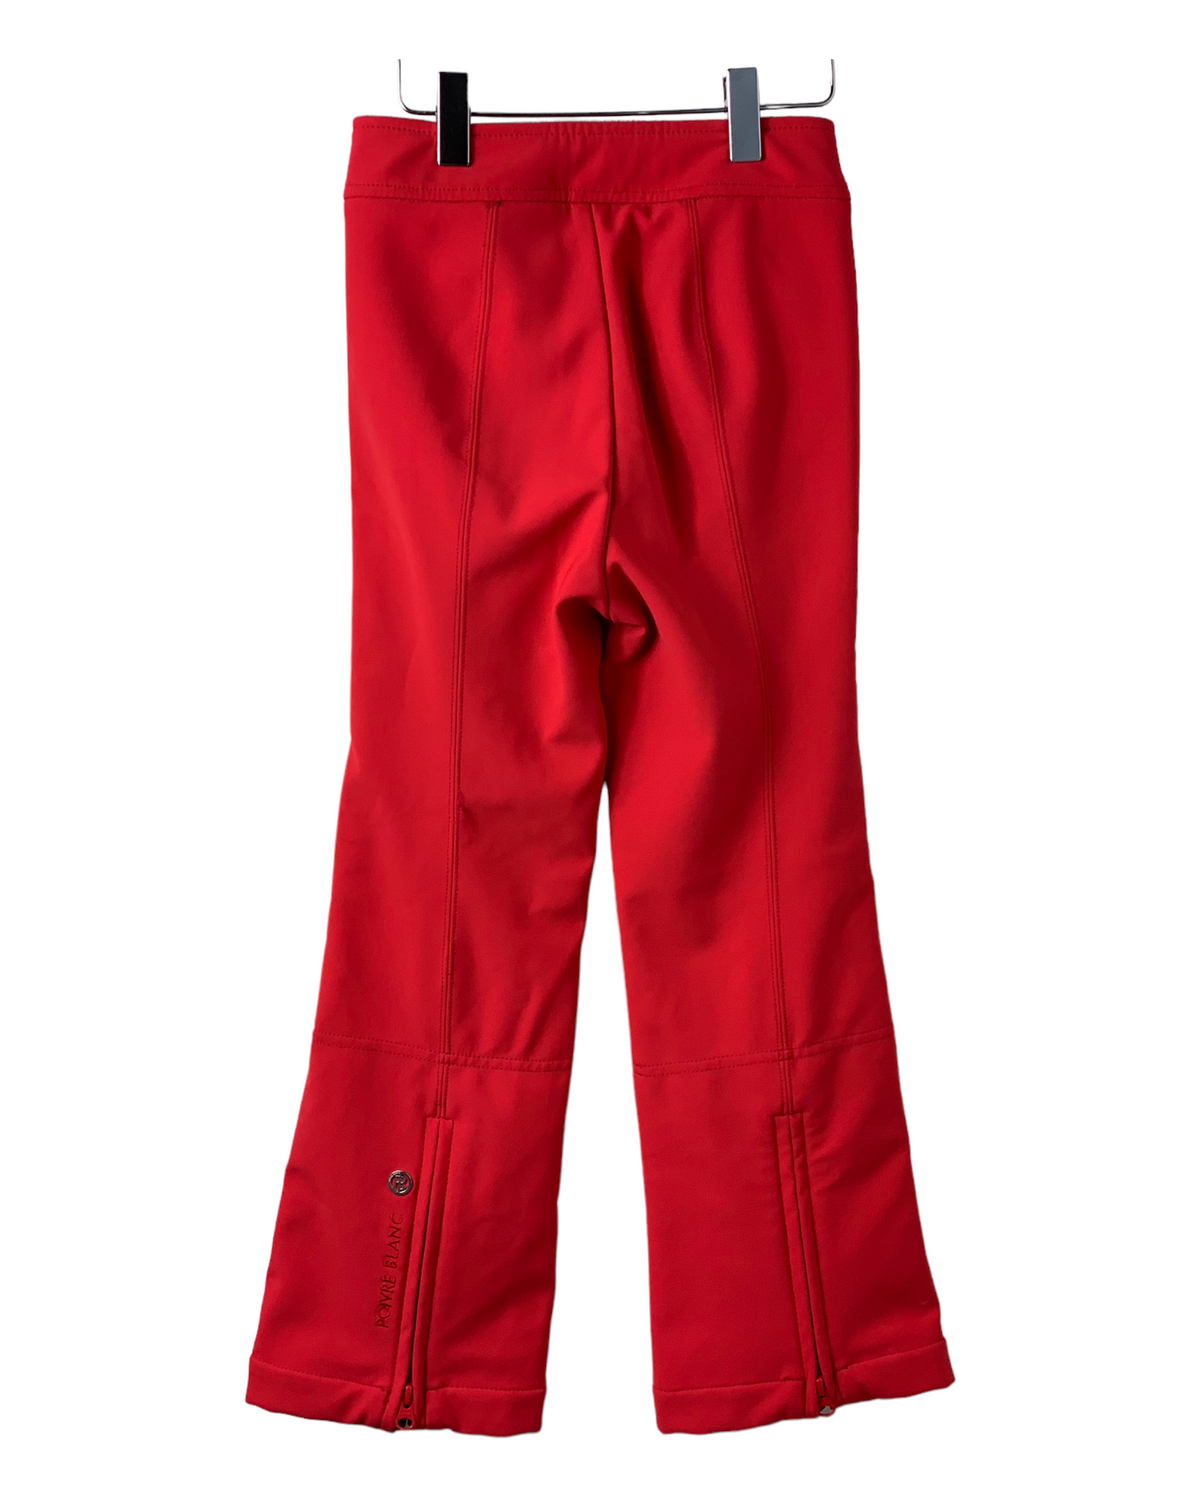 Pantalon ski rouge Poivre Blanc 8 ans